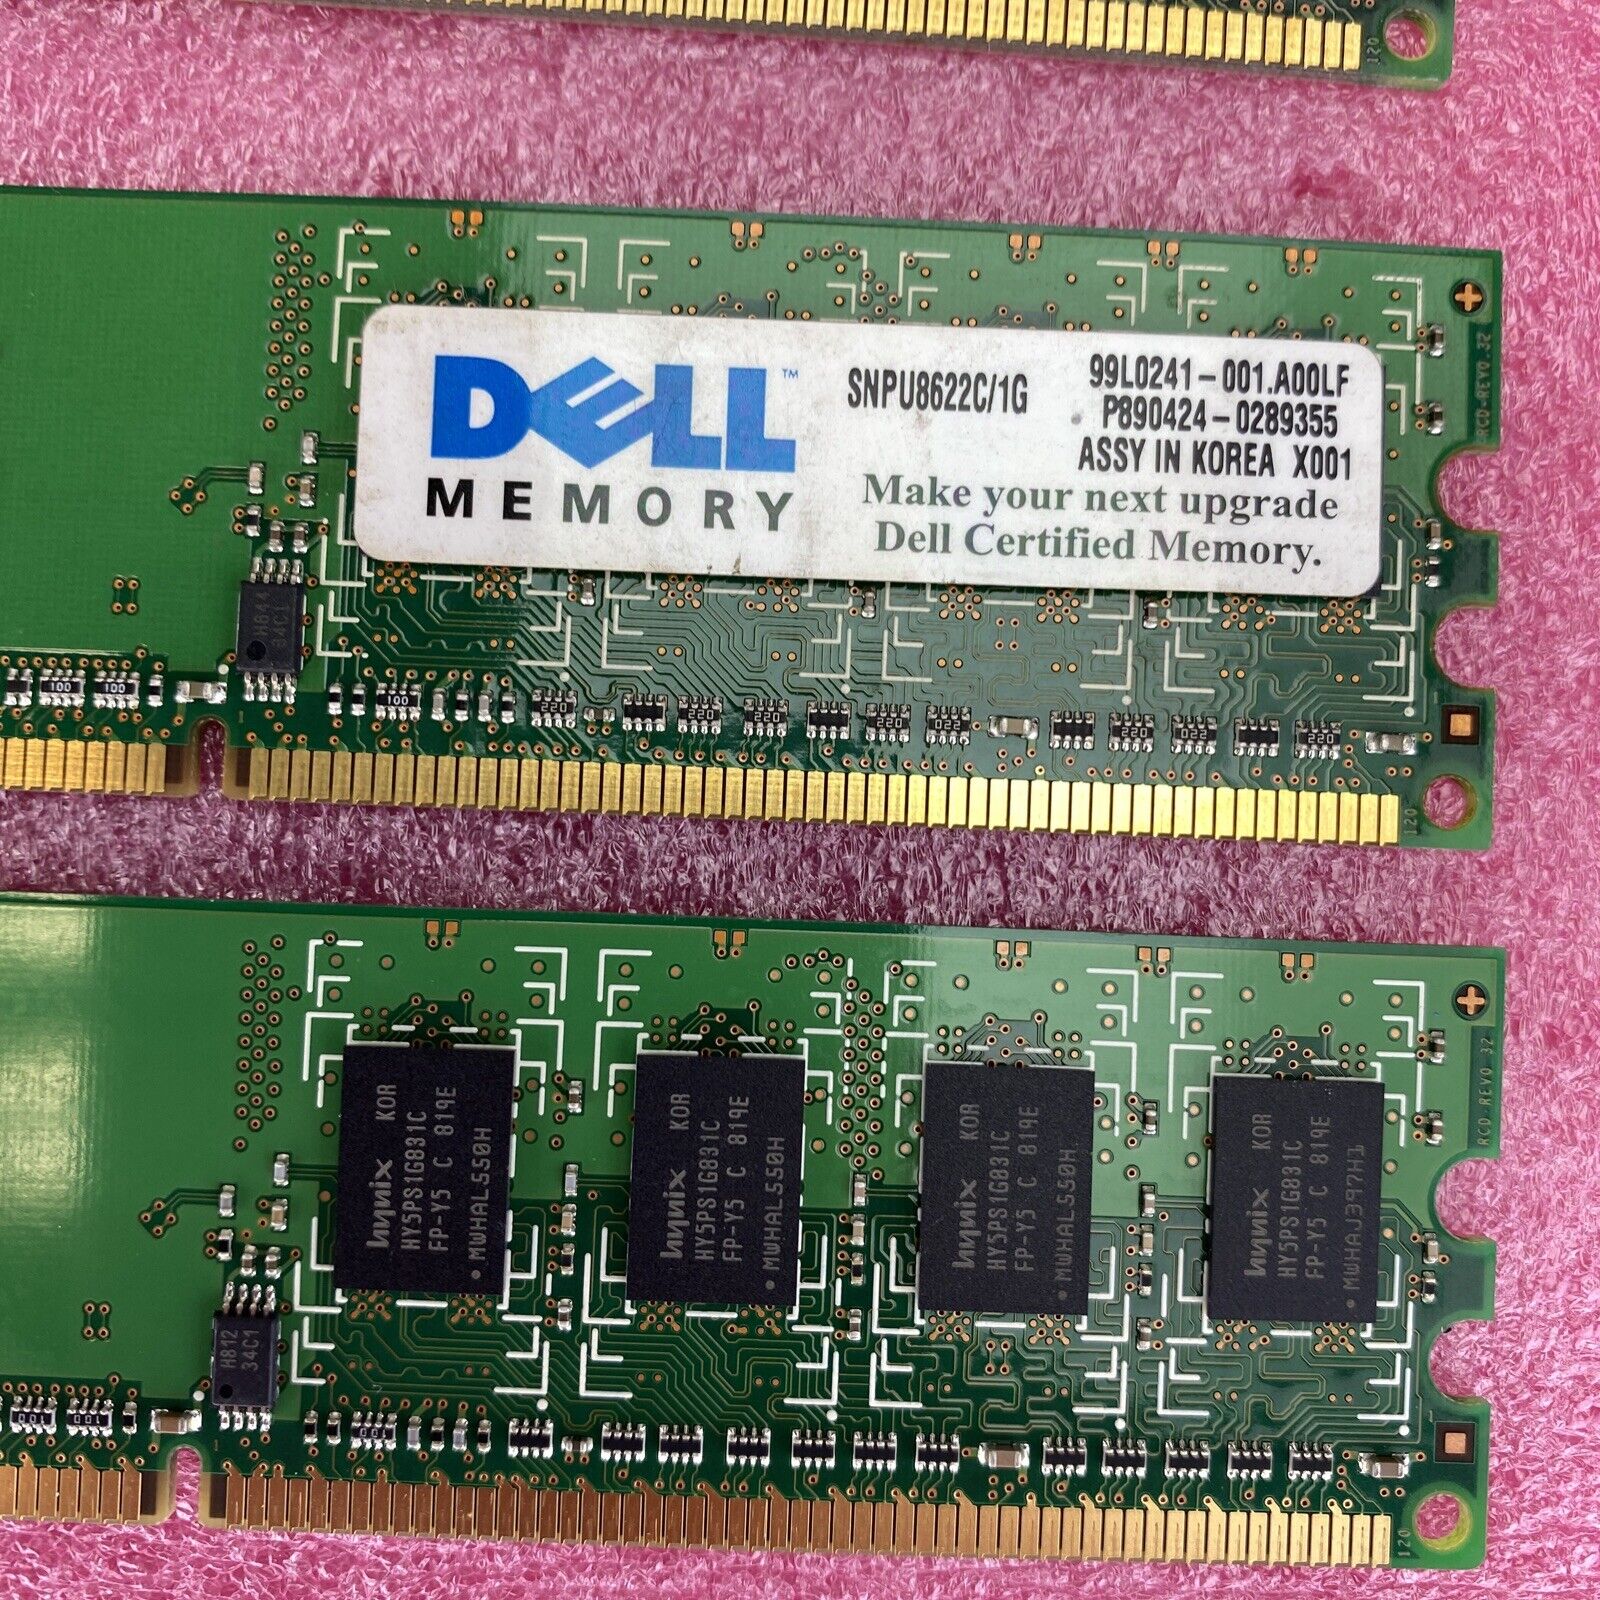 4x 1GB Hynix HYMP112U64CP8-S6 DDR2 DIMM 1Rx8 PC2-6400U-66-12 memory RAM